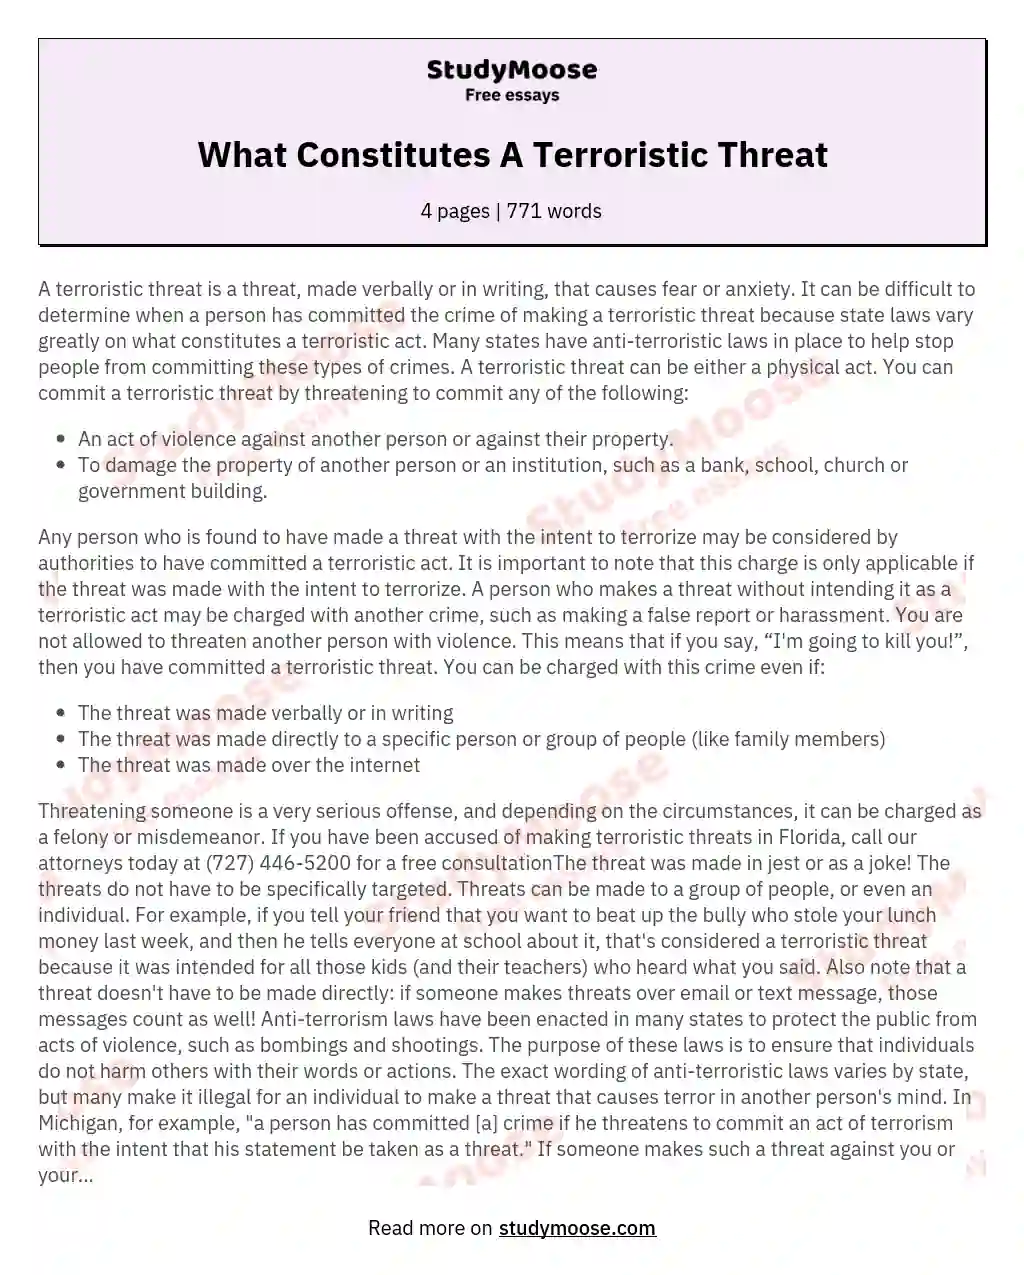 What Constitutes A Terroristic Threat essay